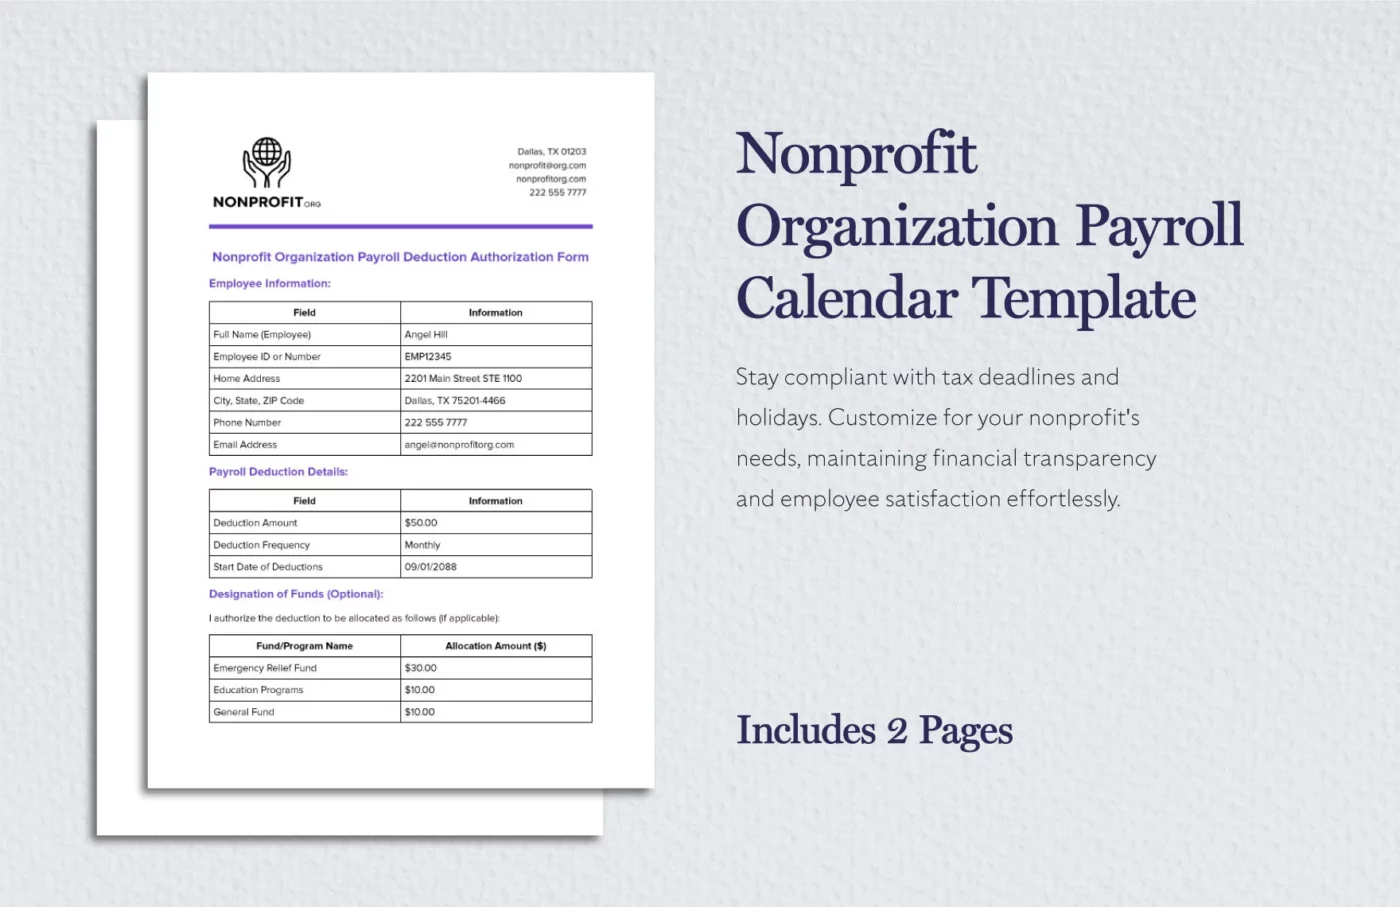 nonprofit-organization-payroll-calendar-template-w2c6y